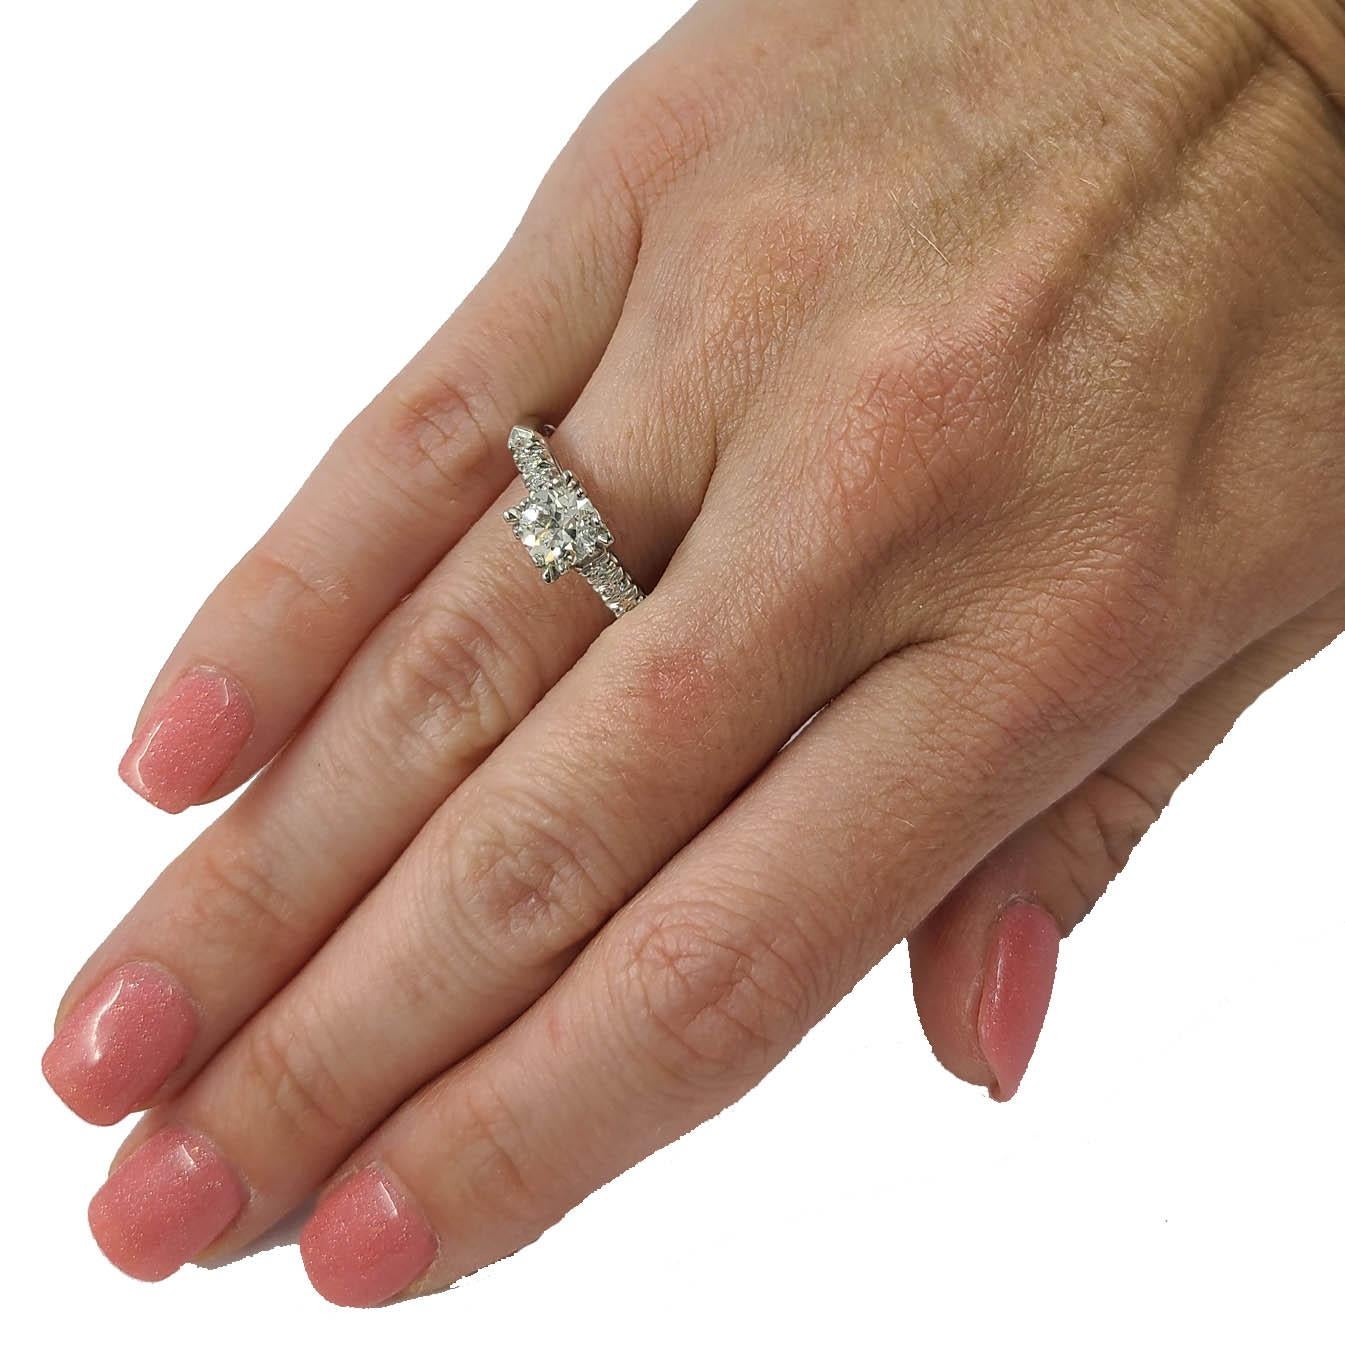 Platin-Ring mit einem 0,90 Karat Old European Cut Diamond von SI1 Clarity & J Color Set mit 6 Single Cut Accent Diamonds Totaling eine zusätzliche 0,10 Karat. Das fertige Gewicht beträgt 5,0 Gramm. Fingergröße 8; Der Kauf beinhaltet eine kostenlose